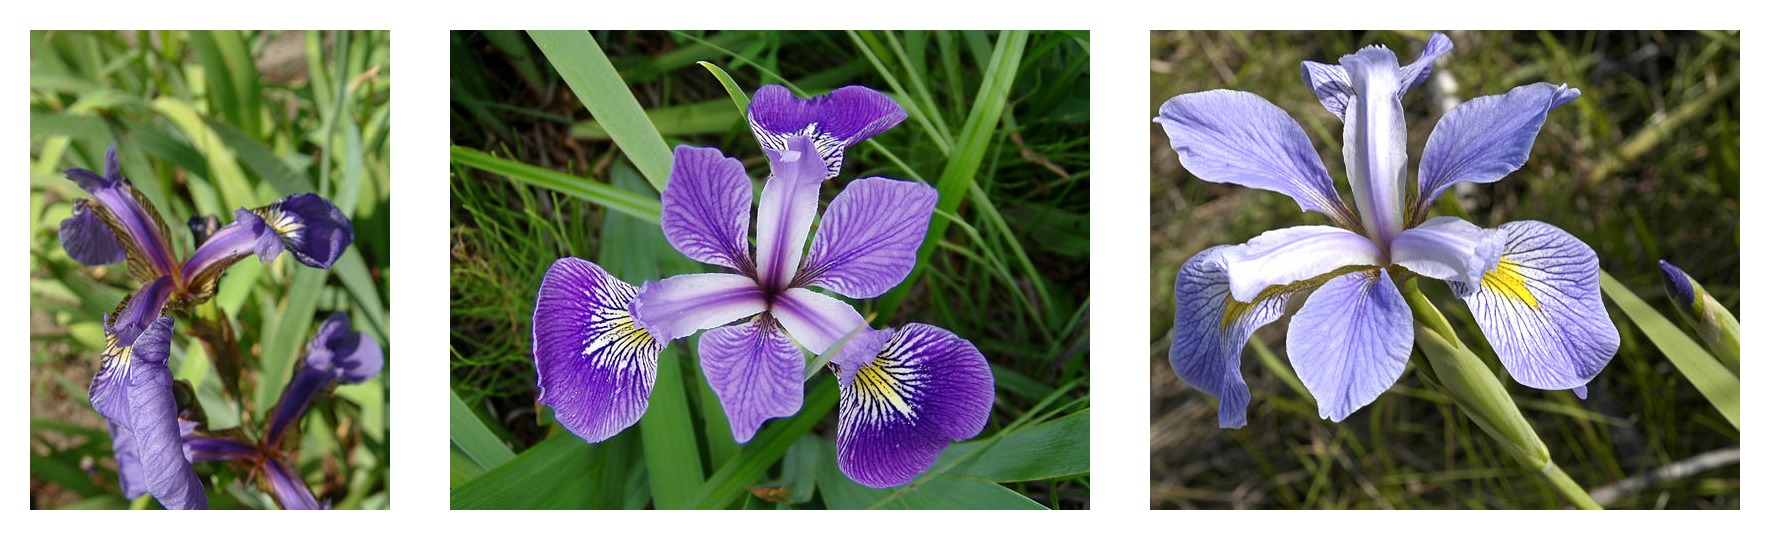 Iris setosa, Iris virginica 및 Iris versicolor의 세 가지 붓꽃 종에 대한 꽃잎 기하학 비교